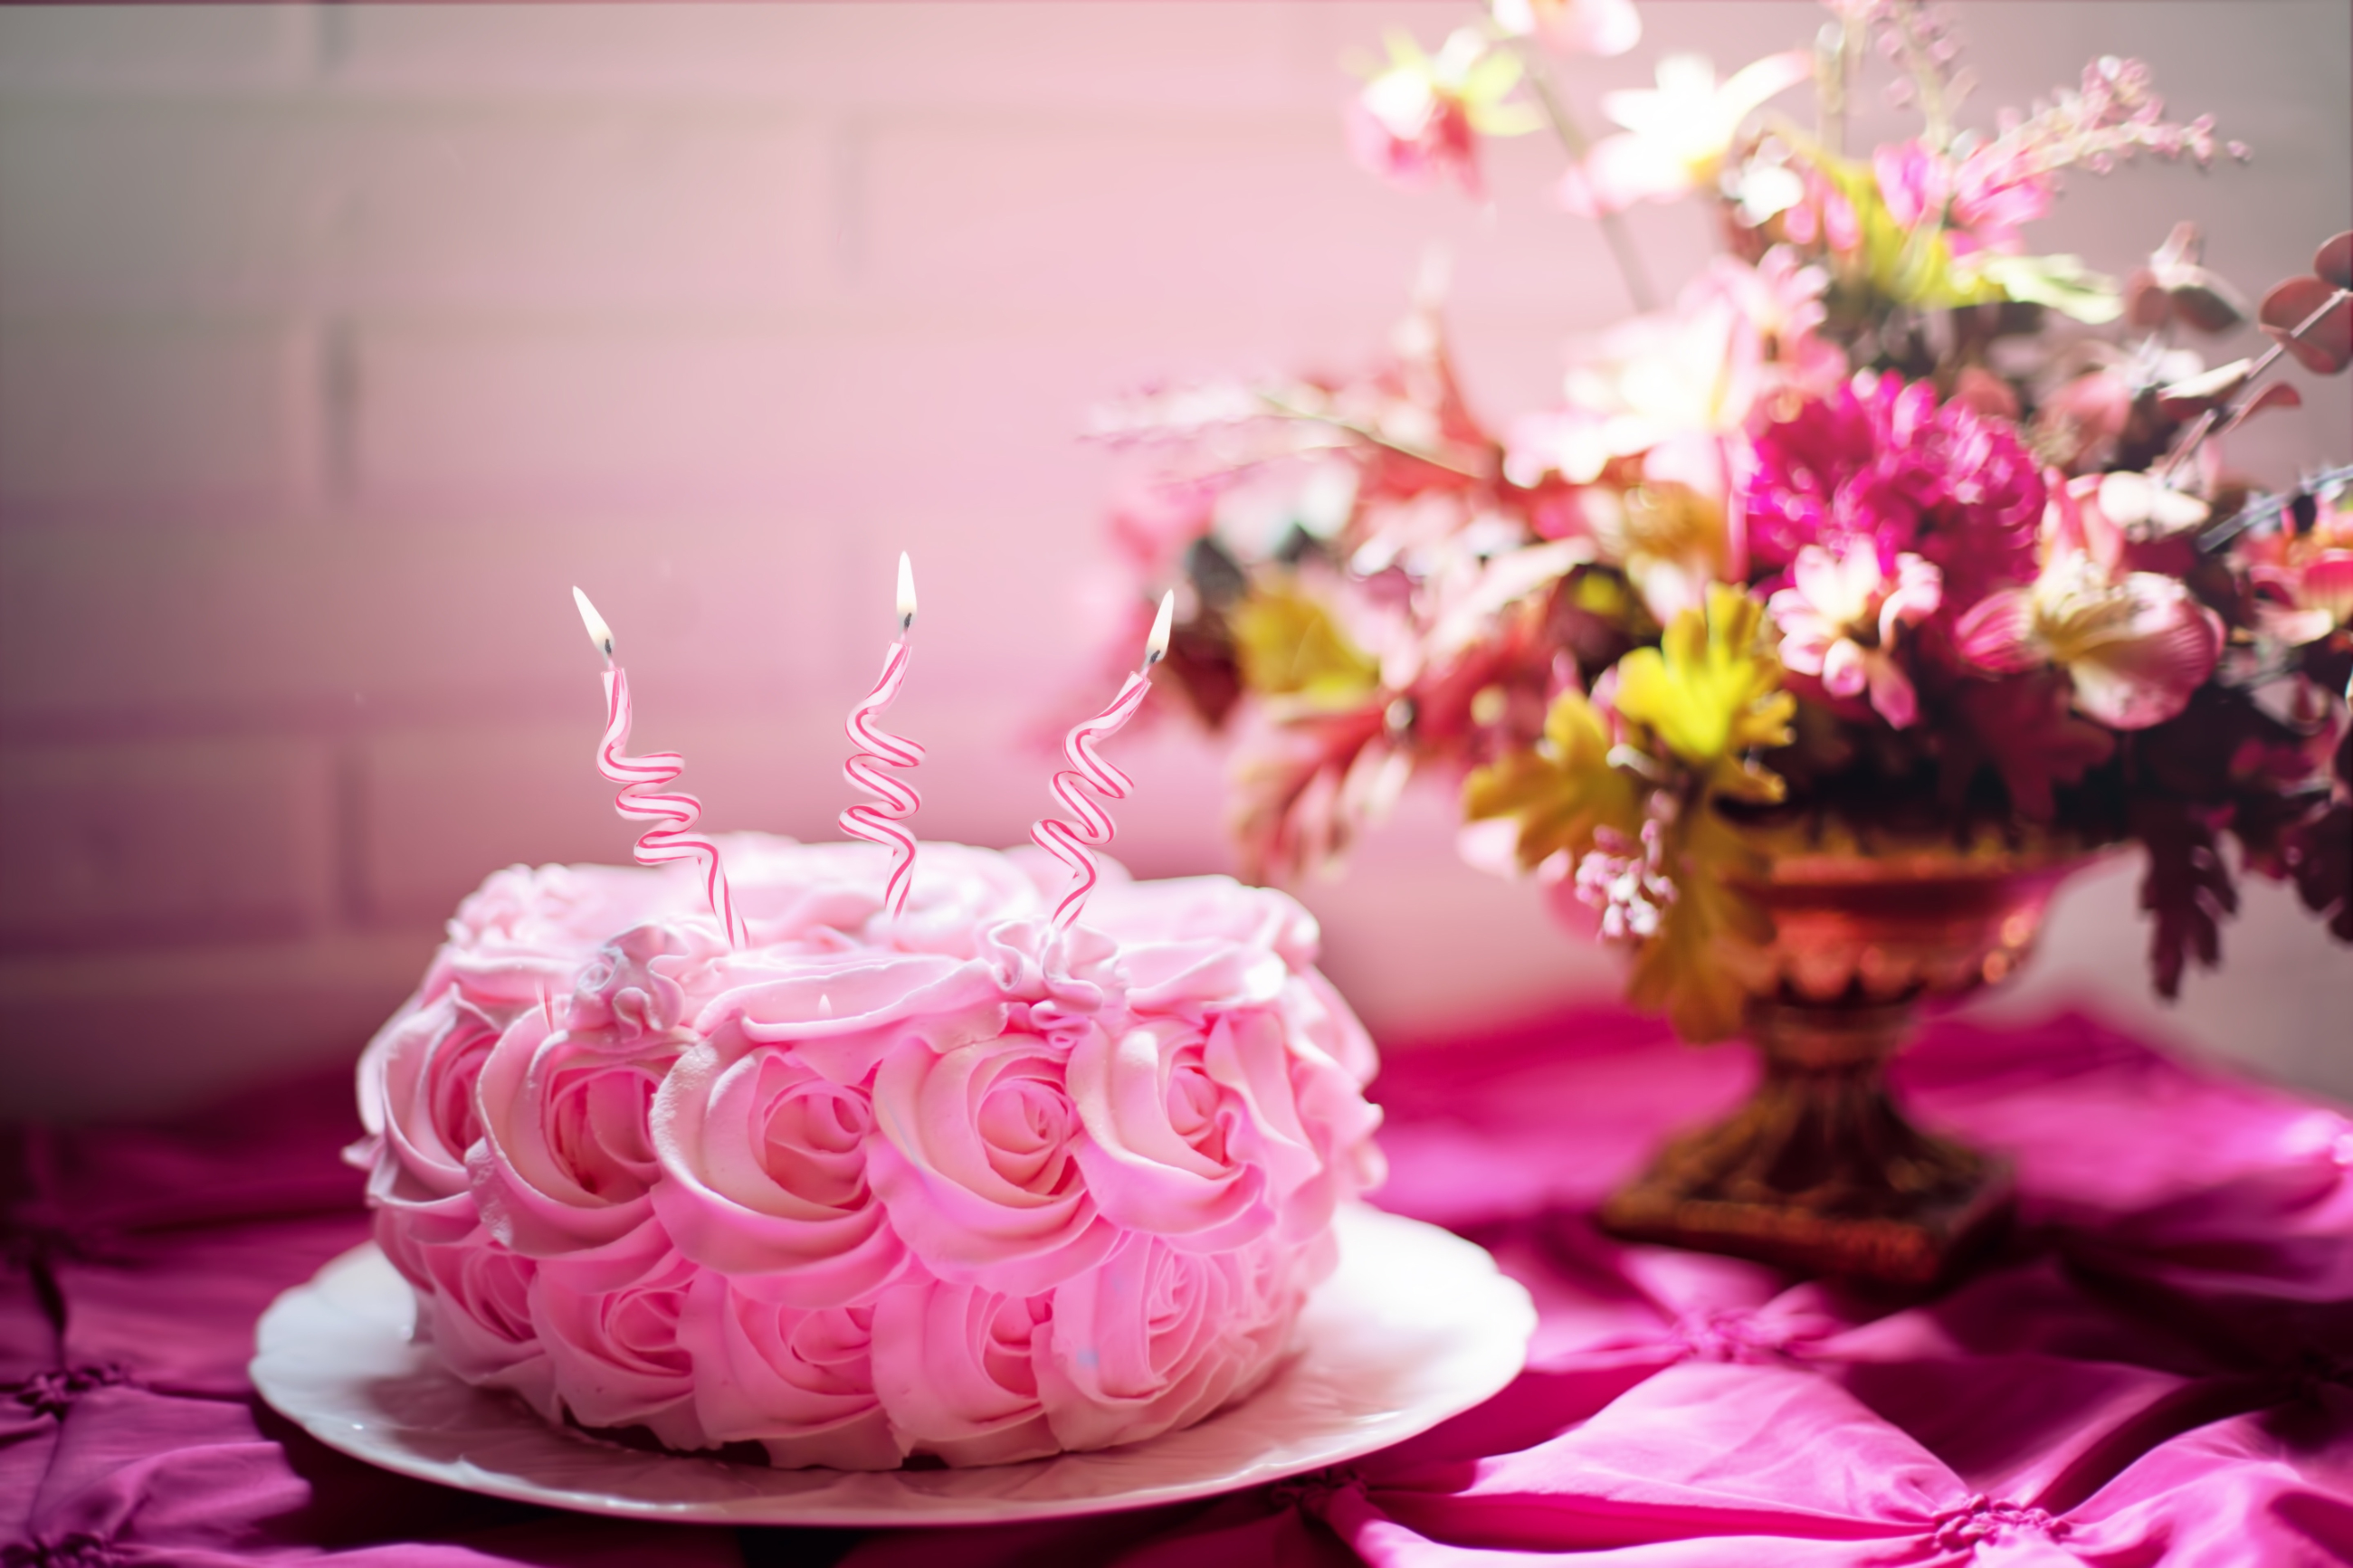 ピンク色のケーキの写真